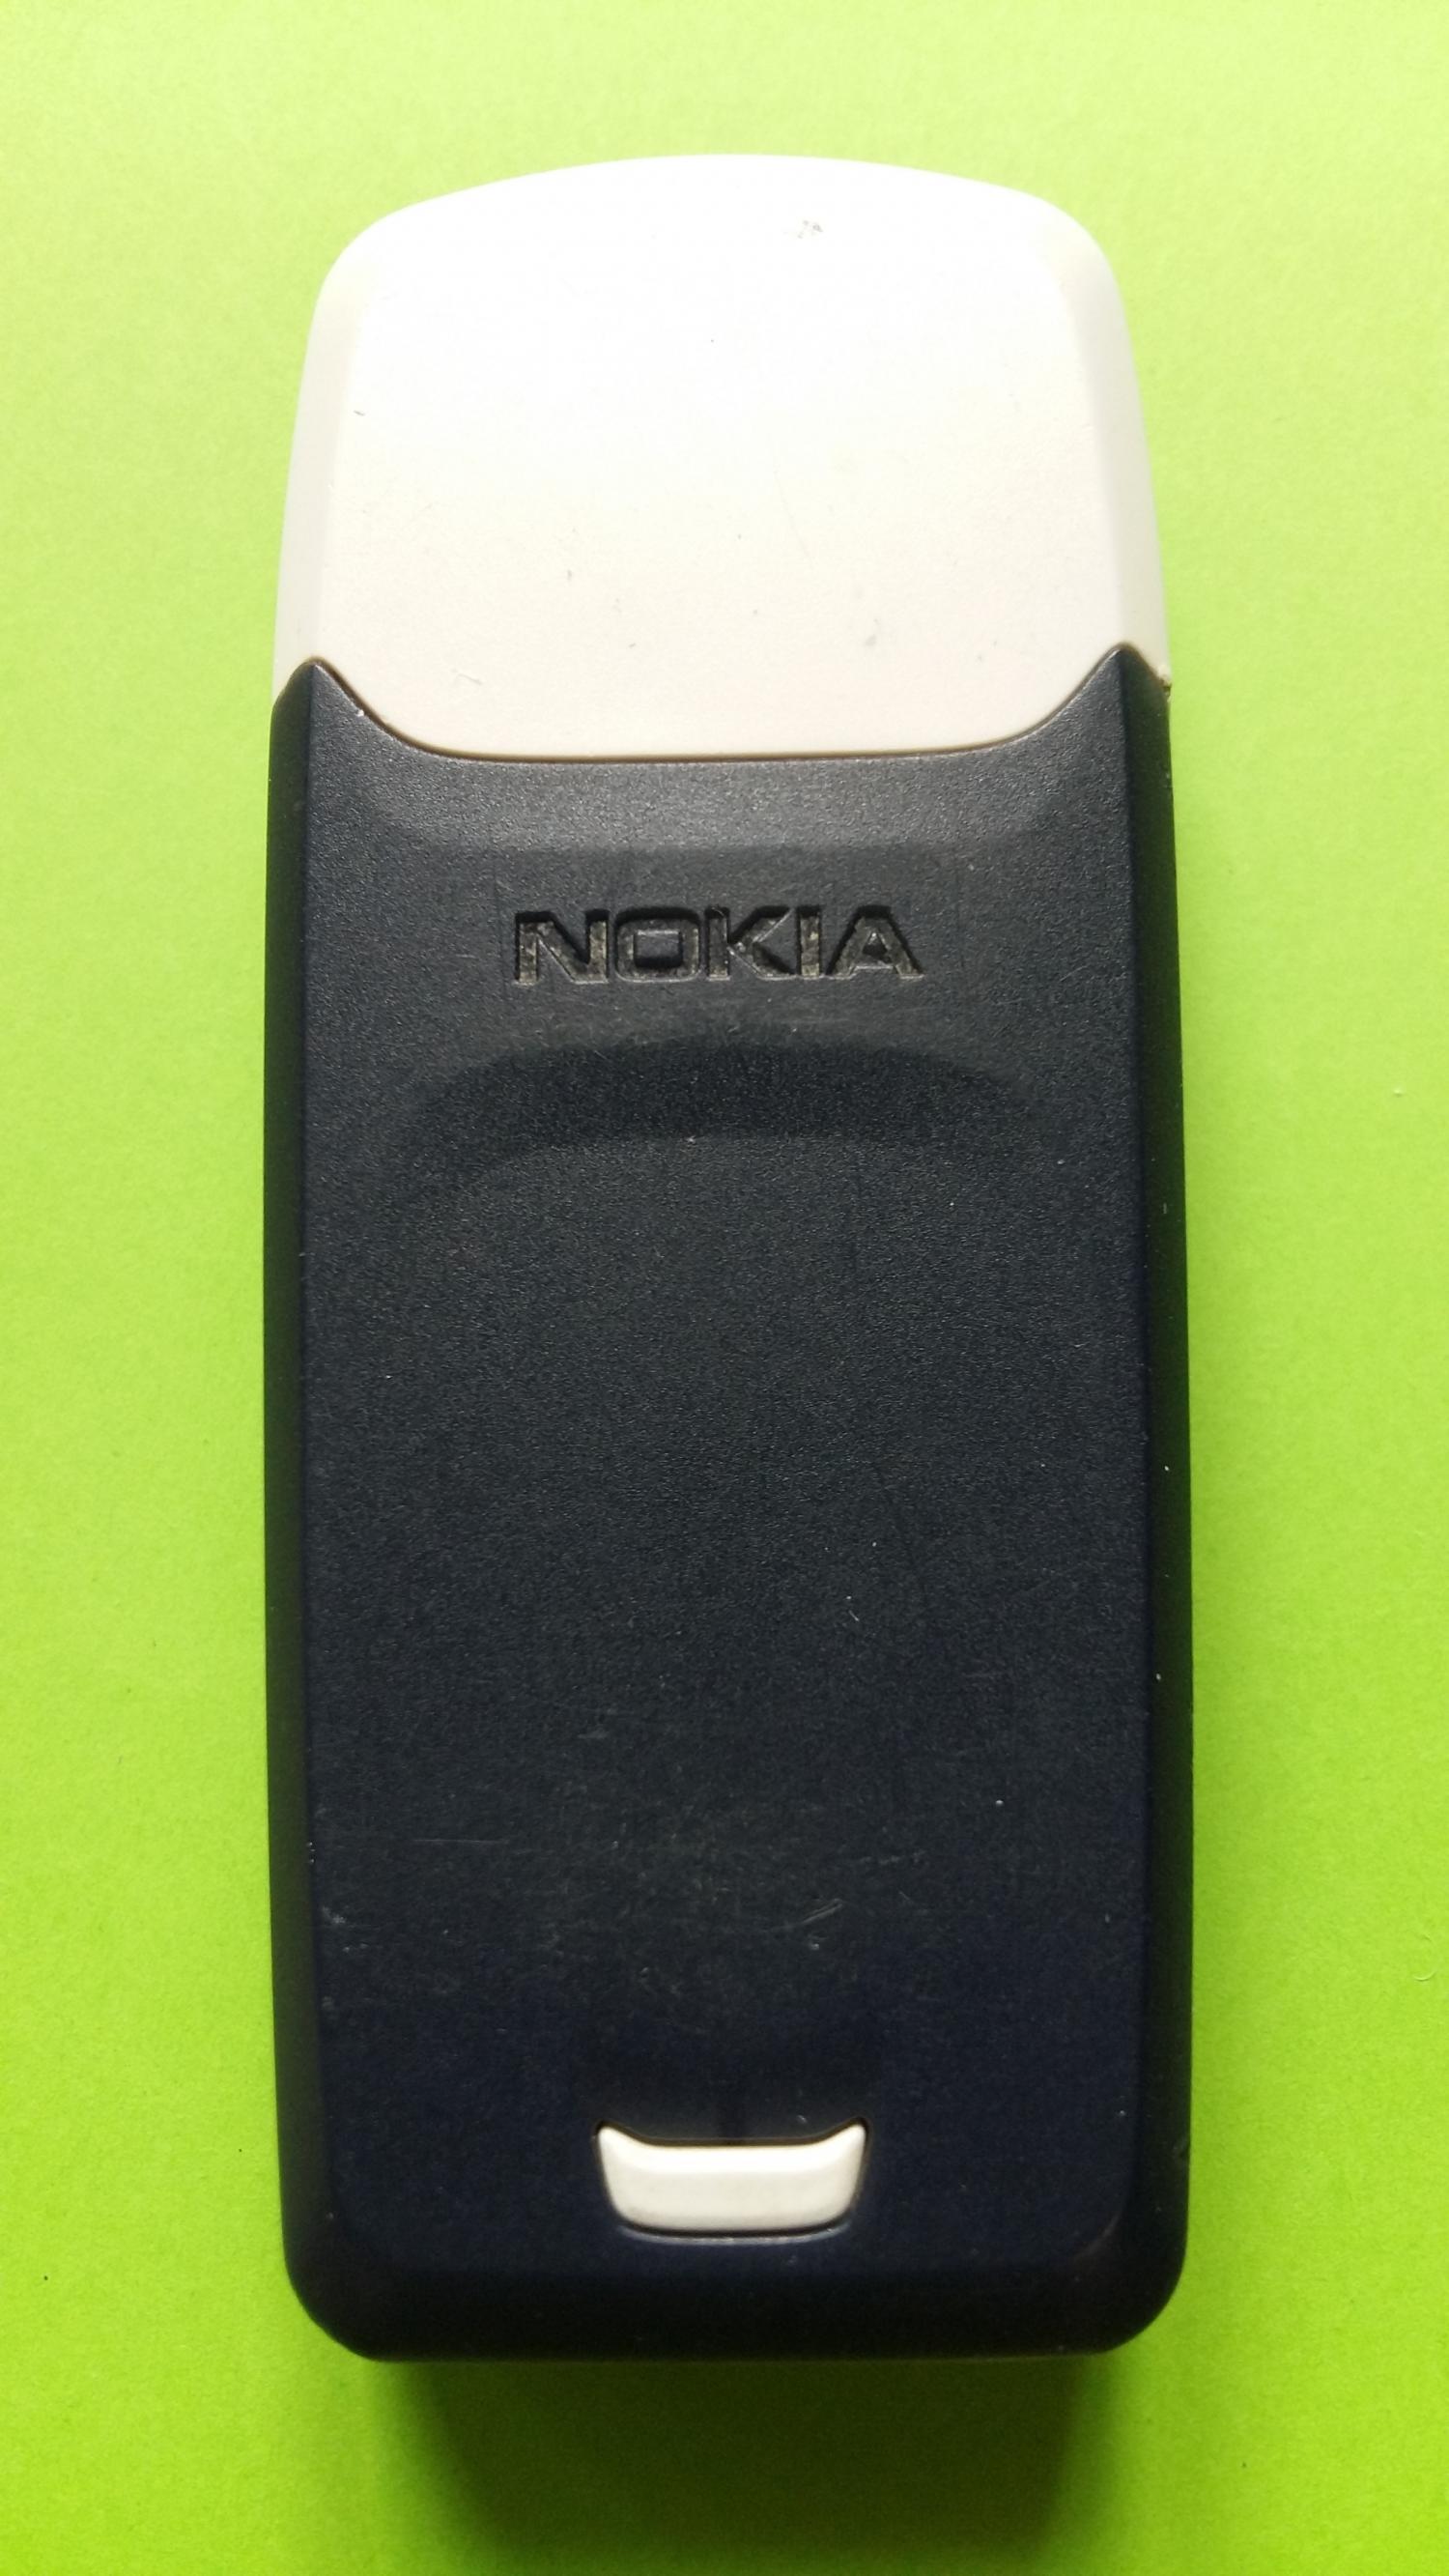 image-7321134-Nokia 3100 (3)2.jpg